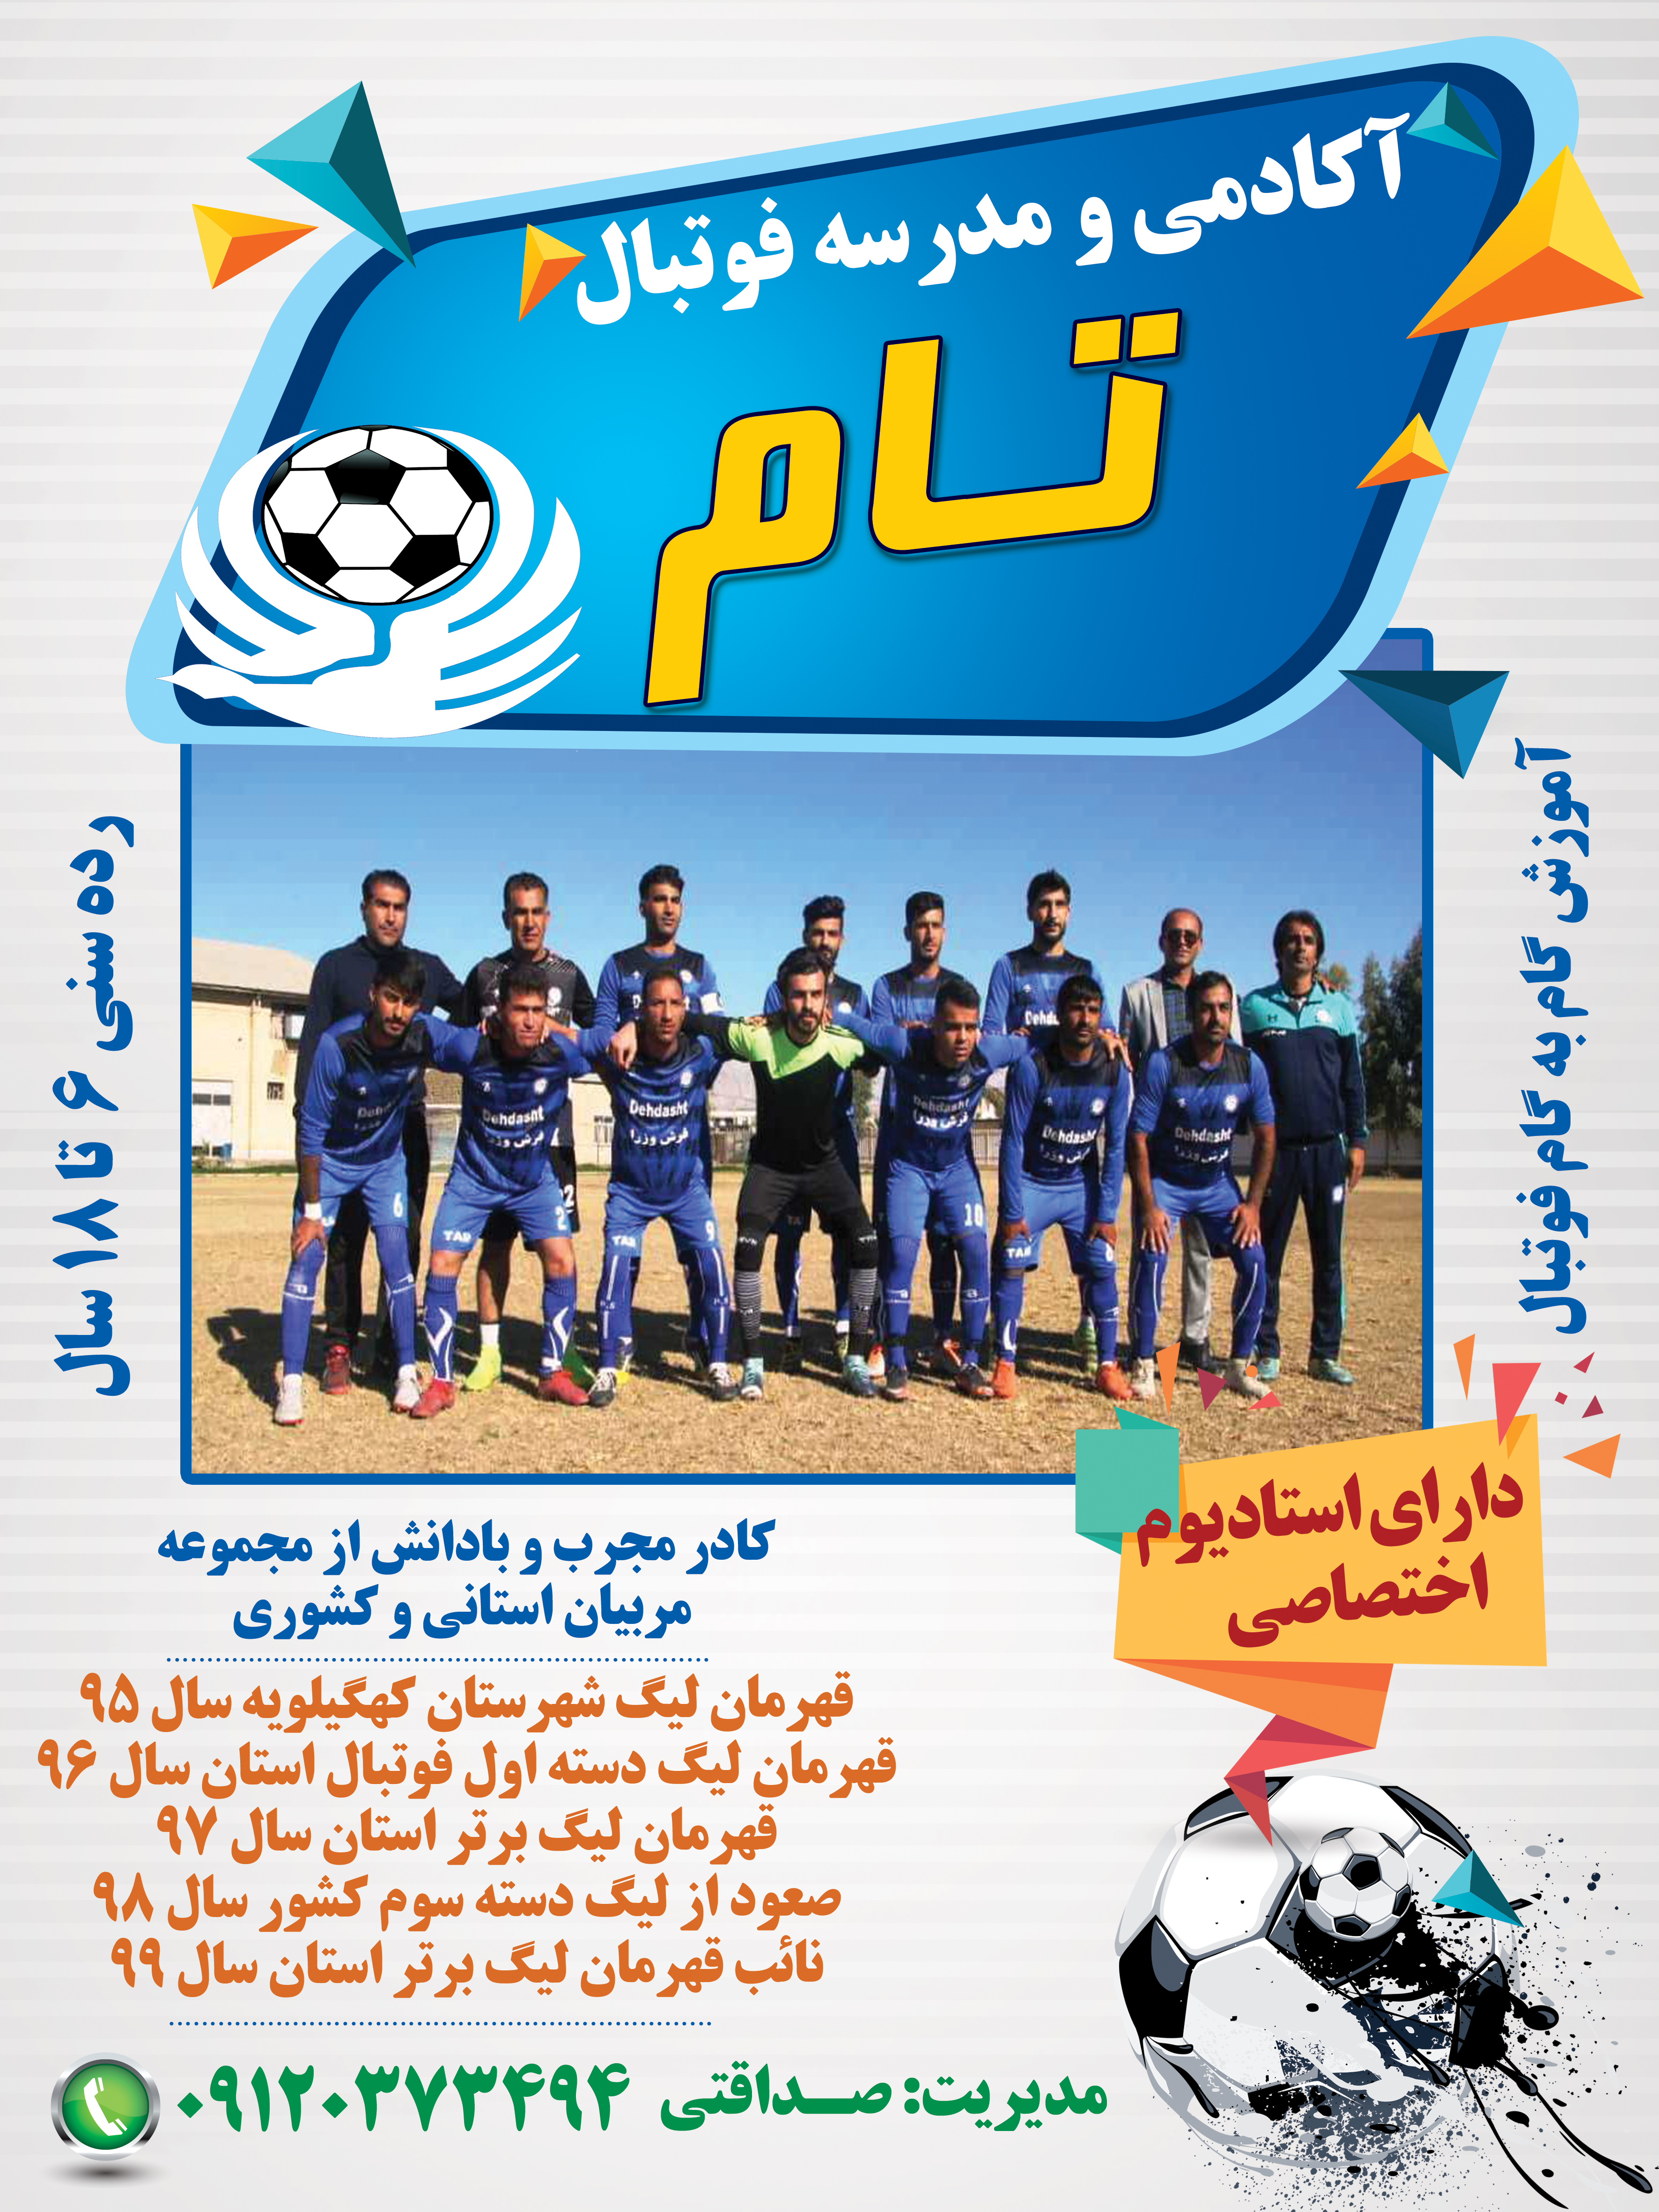 خبر خوش برای اهالی ورزش فوتبال شهرستان کهگیلویه:مدرسه فوتبال تام کهگیلویه به زودی آغاز به کار خواهد کرد+پوستر